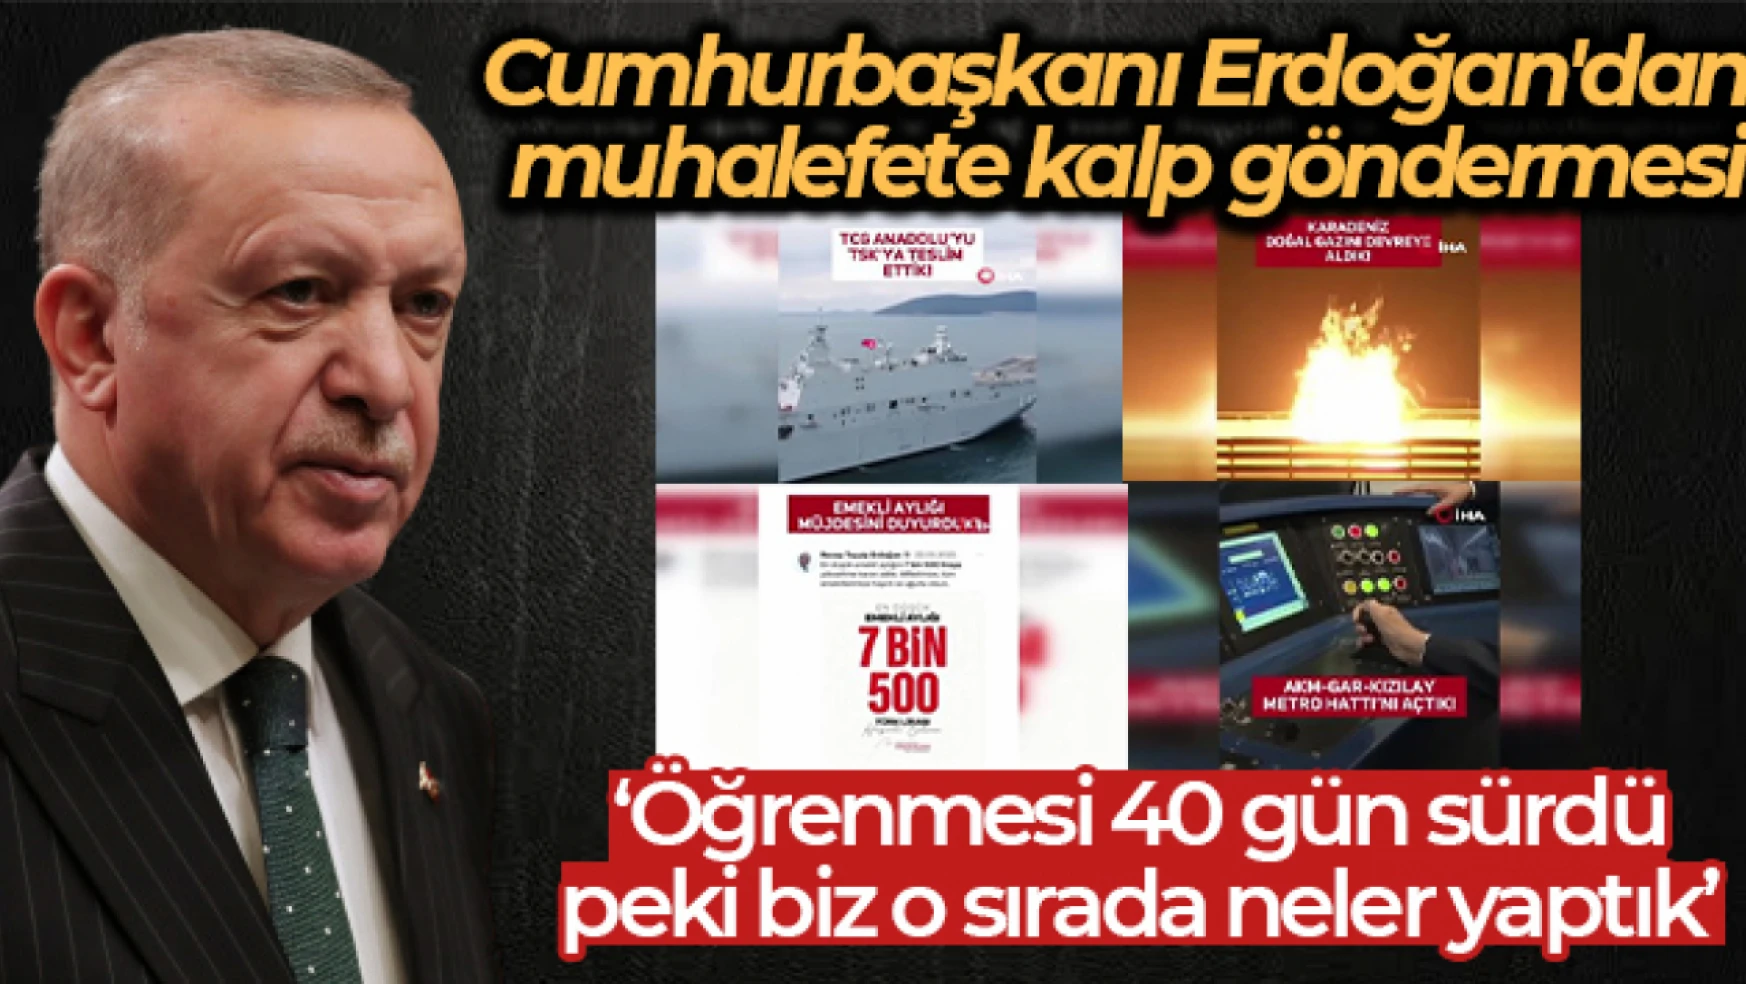 Cumhurbaşkanı Erdoğan: 'Birilerinin kalp yapmayı öğrenmesi 40 gün sürdü, peki biz o sırada neler yaptık'